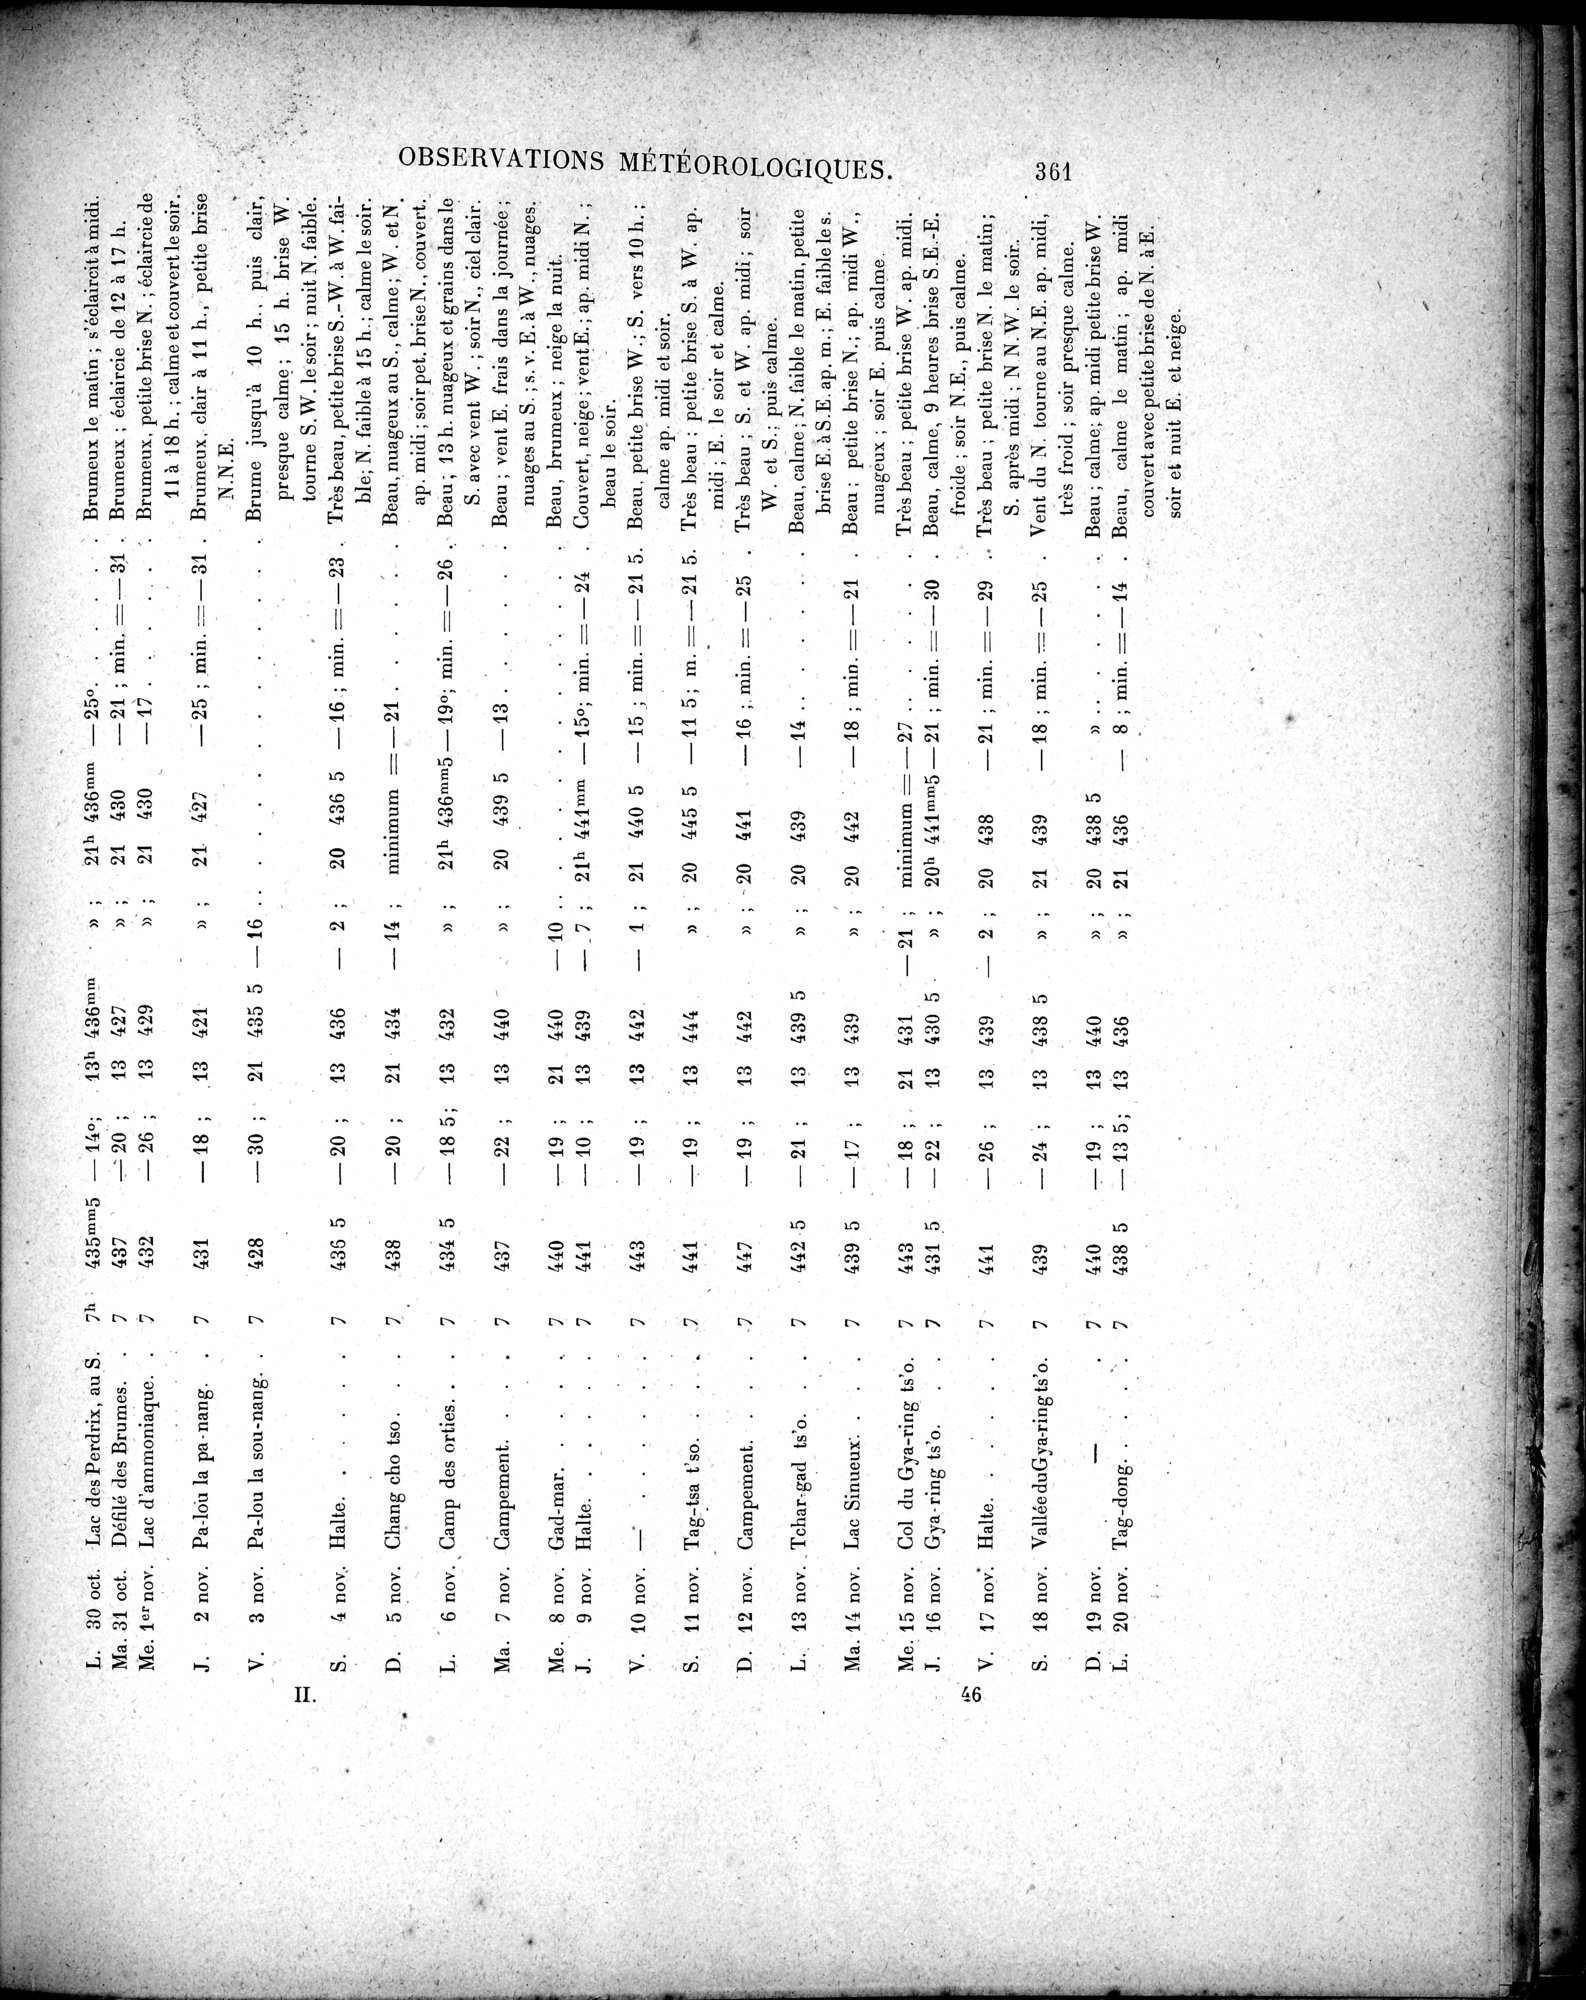 Mission Scientifique dans la Haute Asie 1890-1895 : vol.3 / Page 381 (Grayscale High Resolution Image)